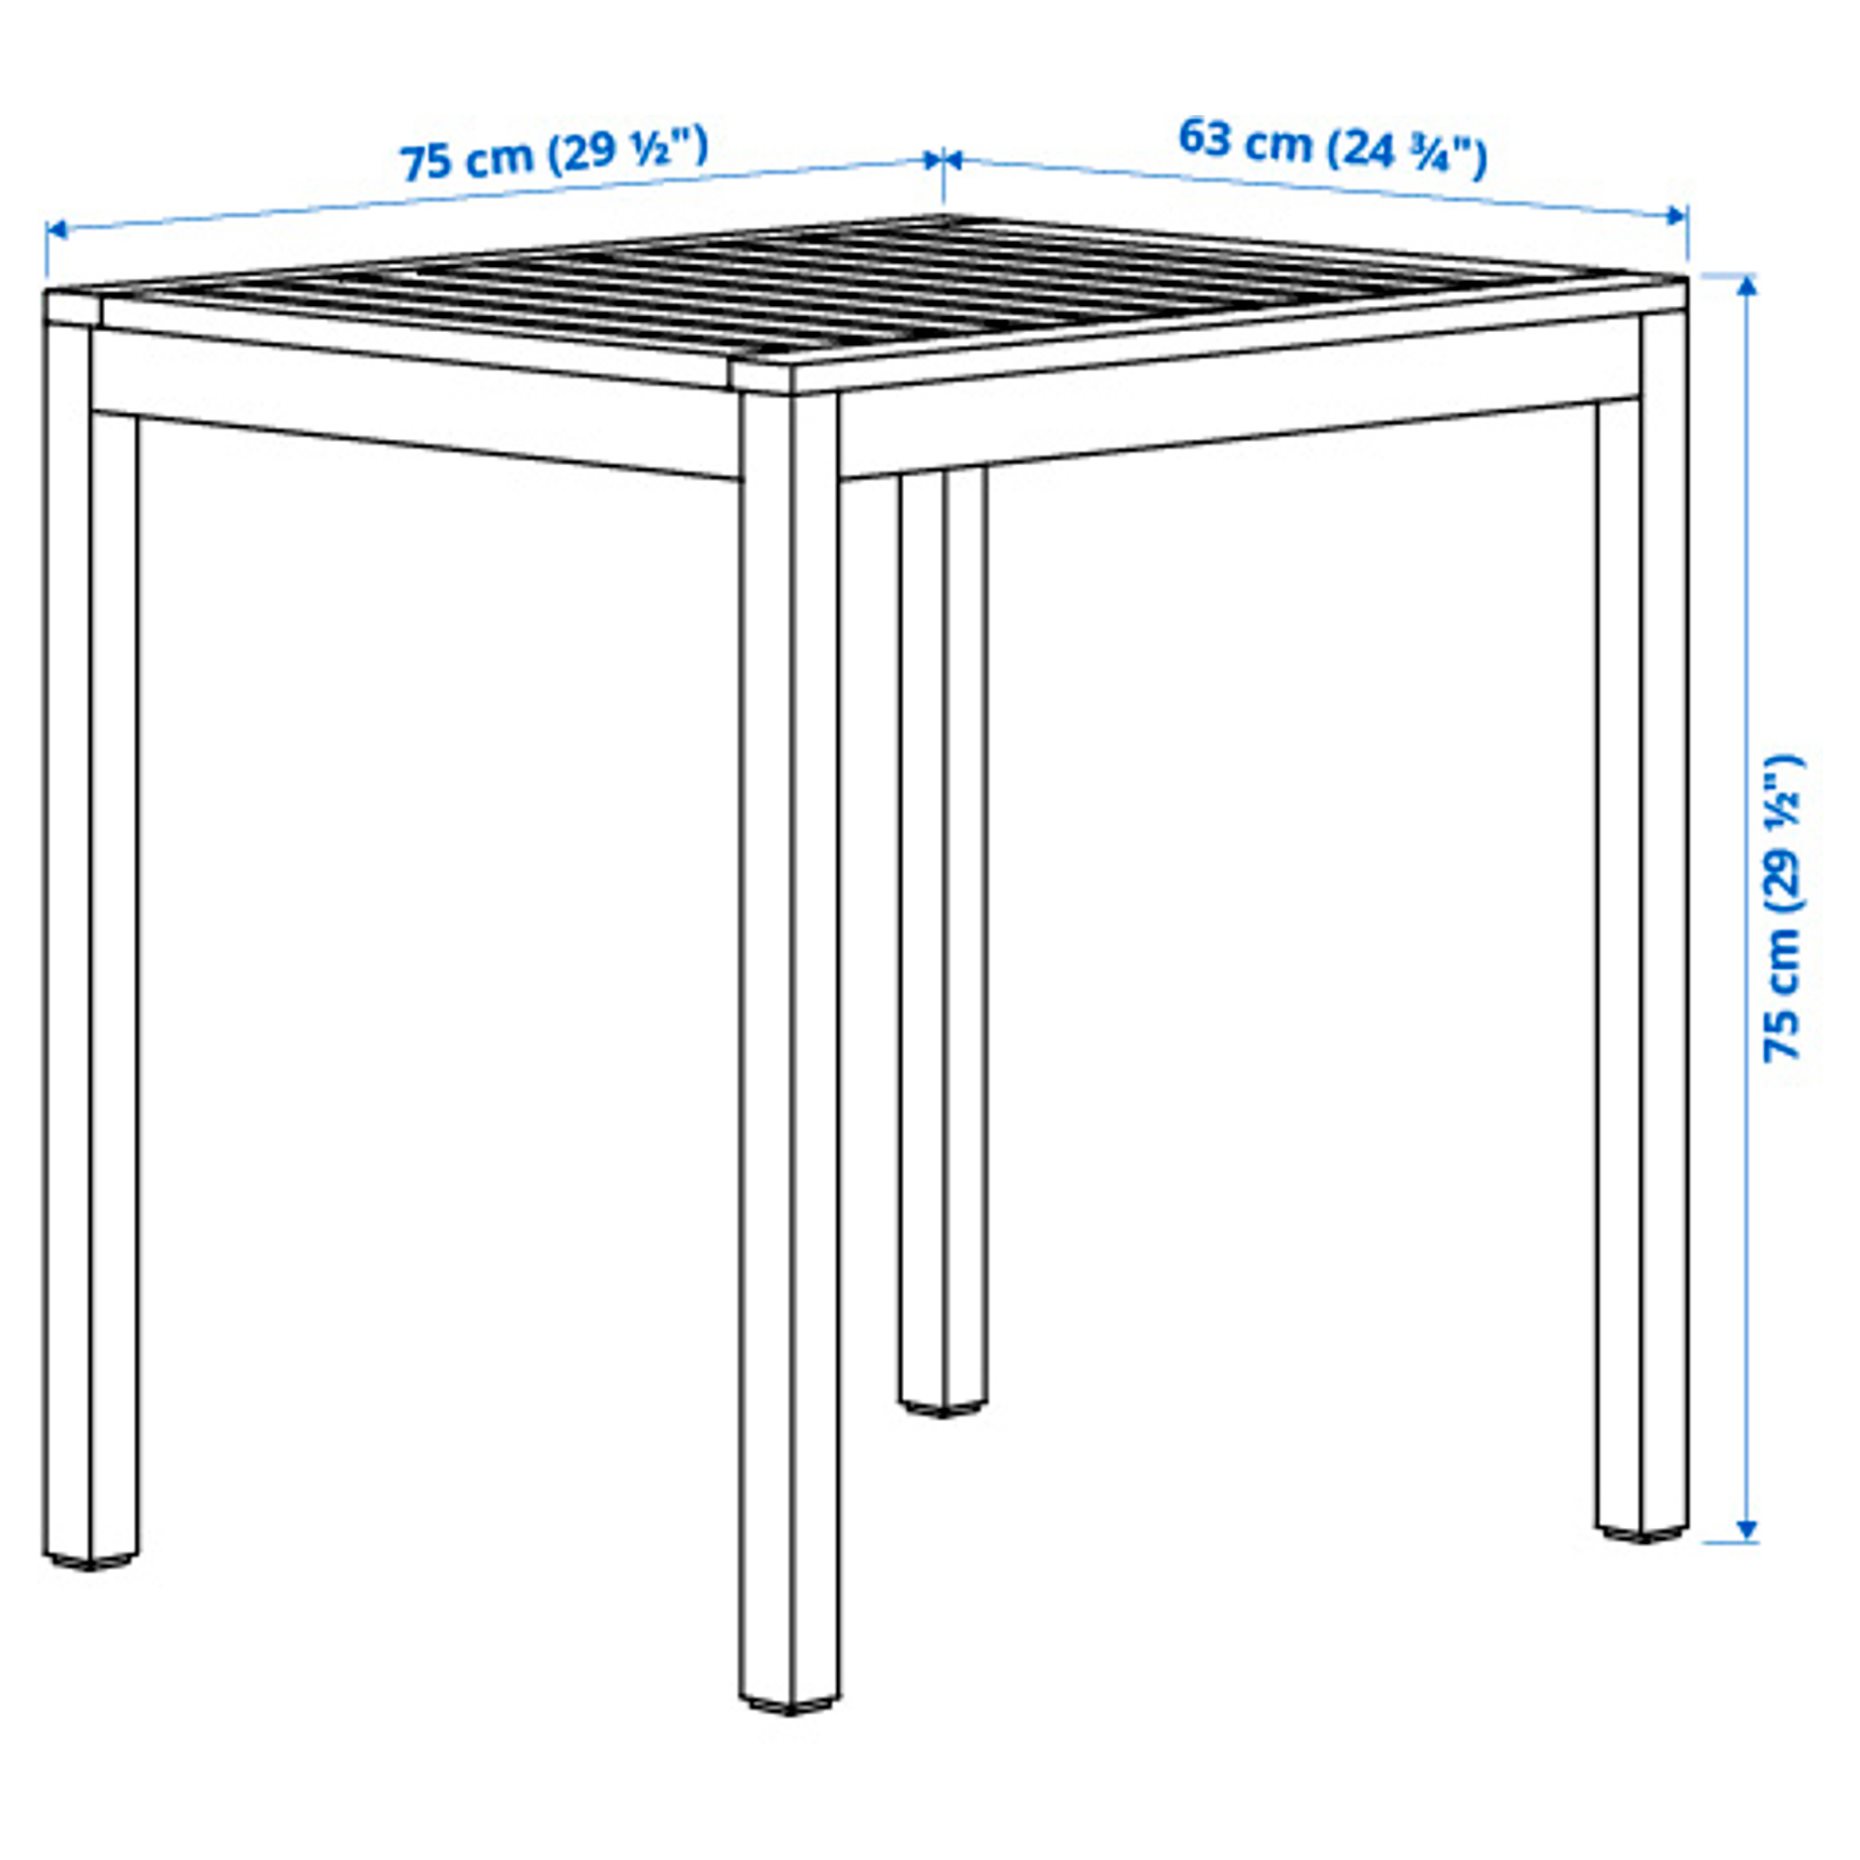 NÄMMARÖ, table/outdoor, 75x63 cm, 005.103.08